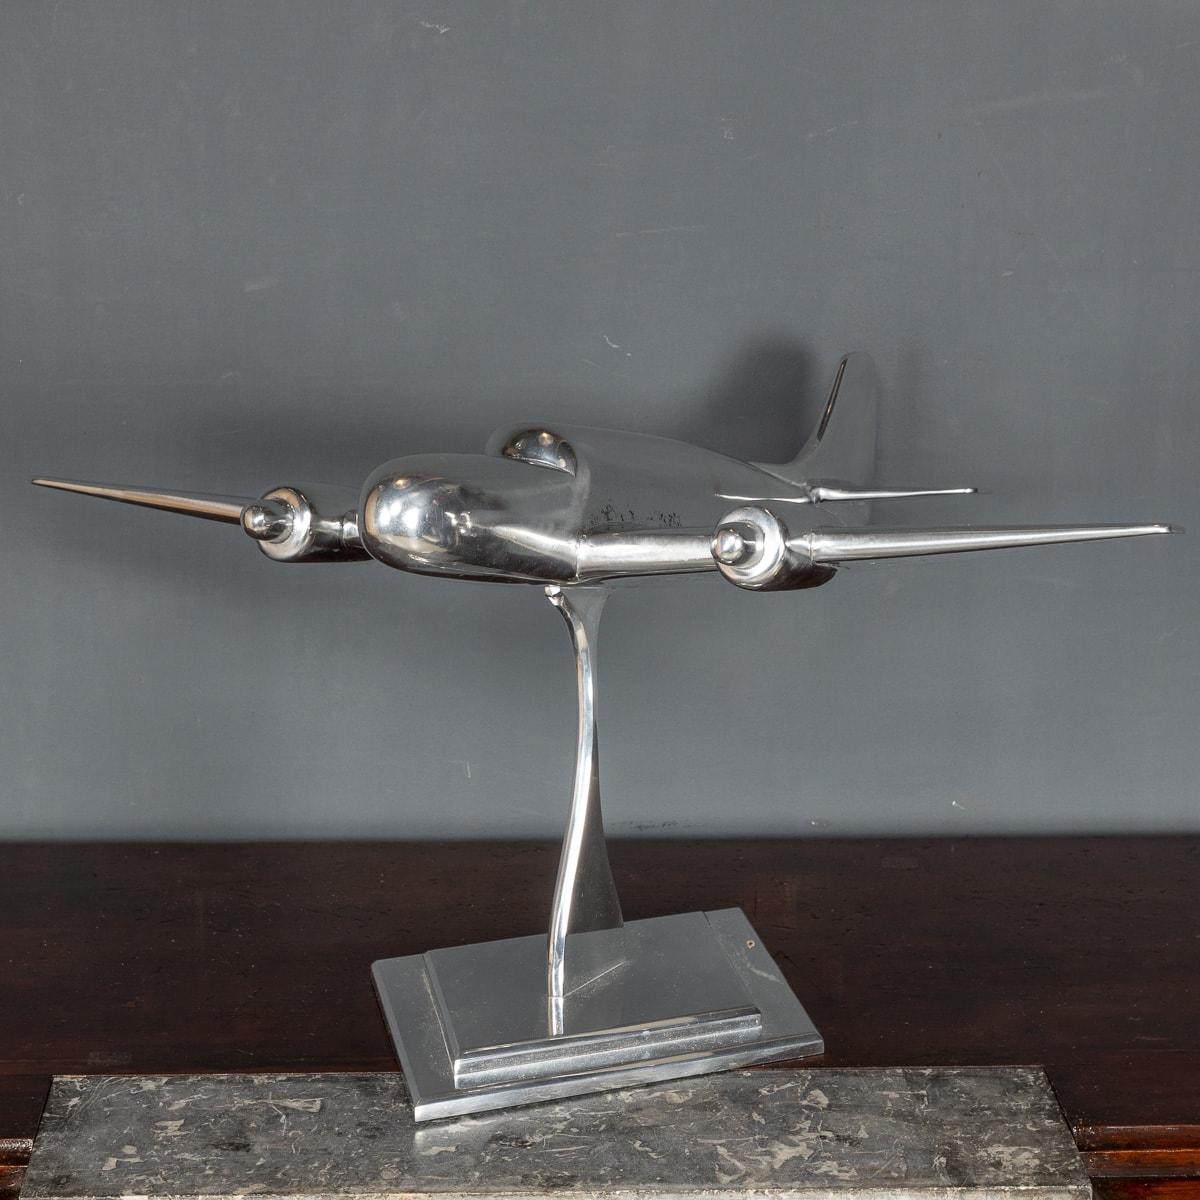 Superbe maquette d'avion bombardier du milieu du 20e siècle, en aluminium poli, posée sur un élégant socle de style art déco.

CONDITION
En très bon état - Pas de dommages, juste une usure générale.

TAILLE
Hauteur : 39cm
Largeur : 77cm
Profondeur :